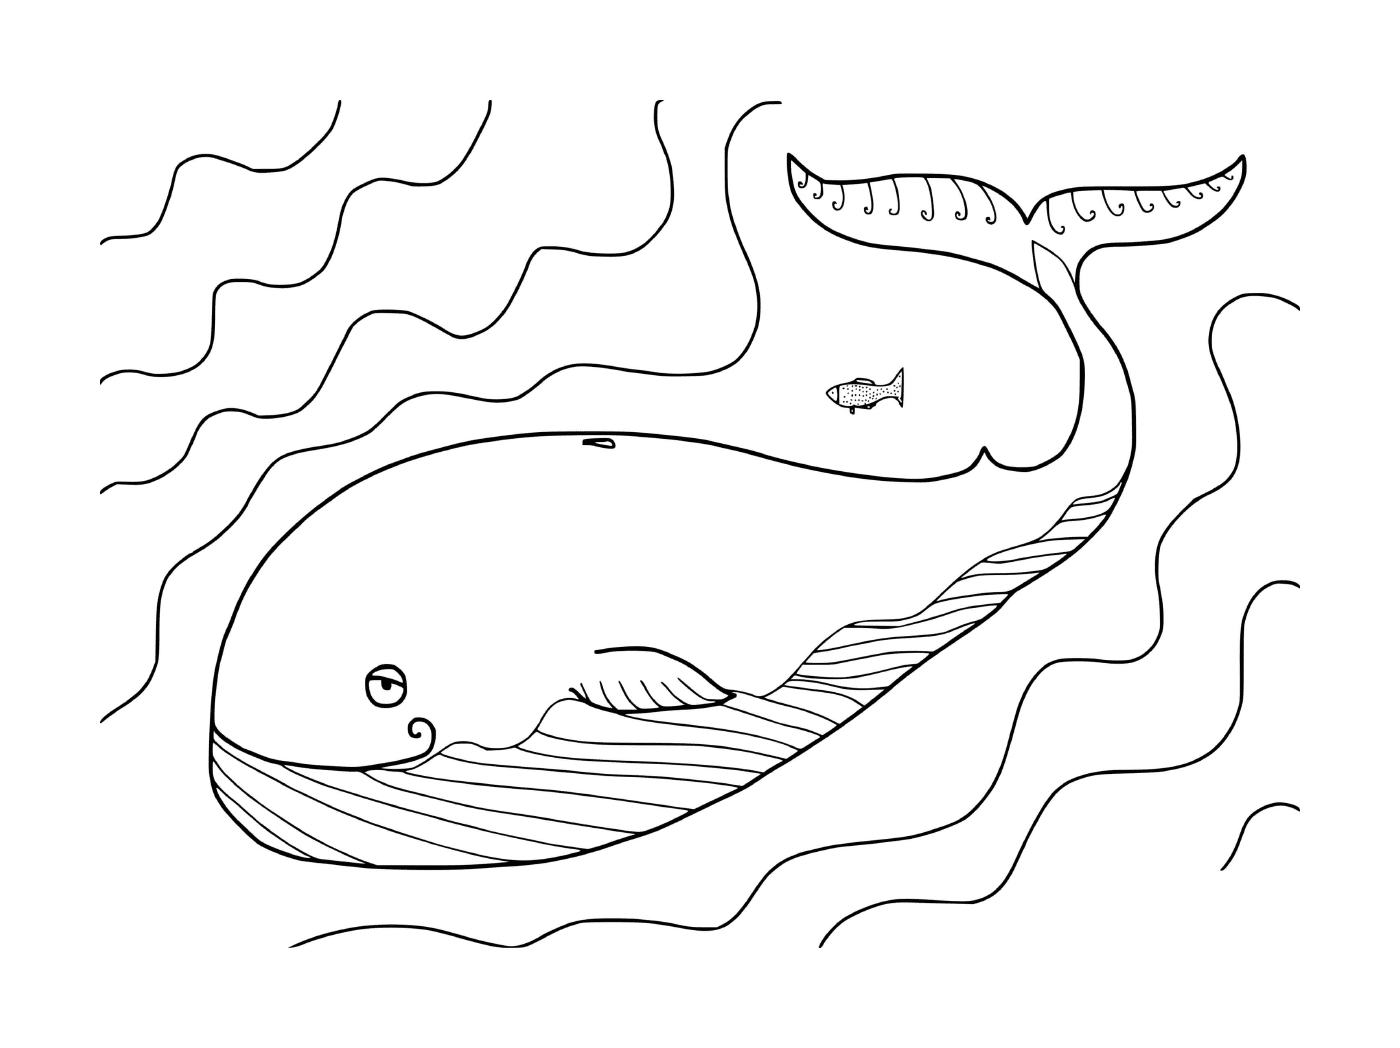  кит и рыба 